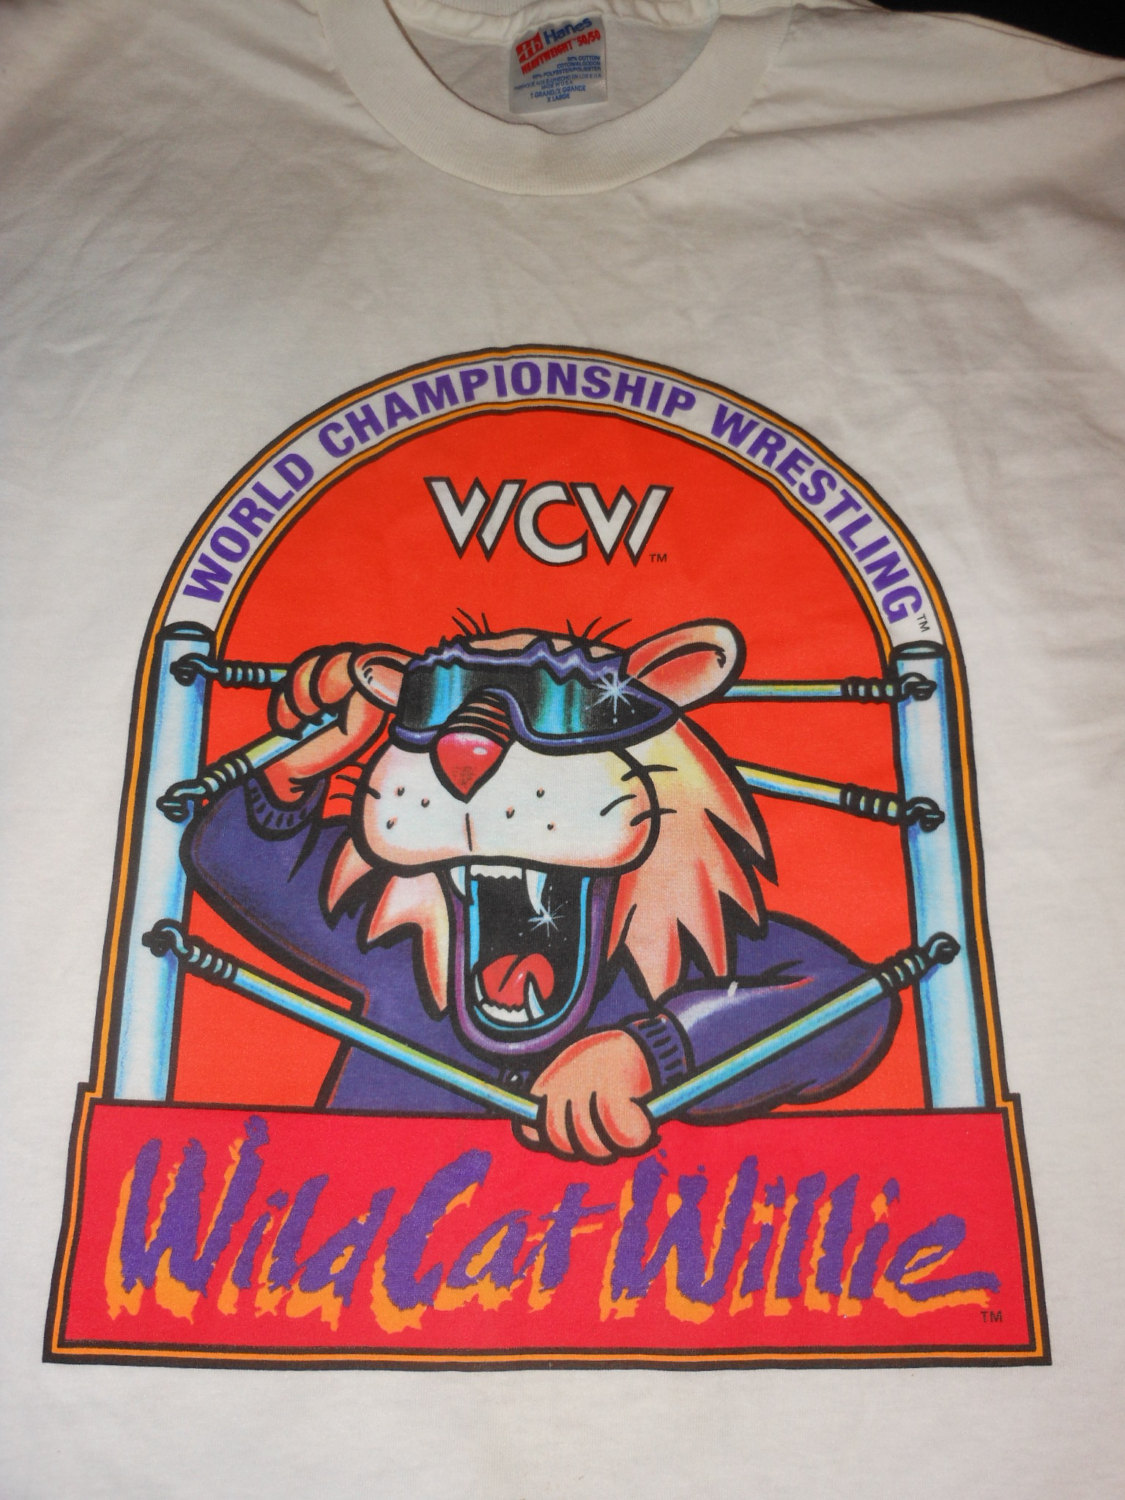 WCW Wild Cat Willie shirt